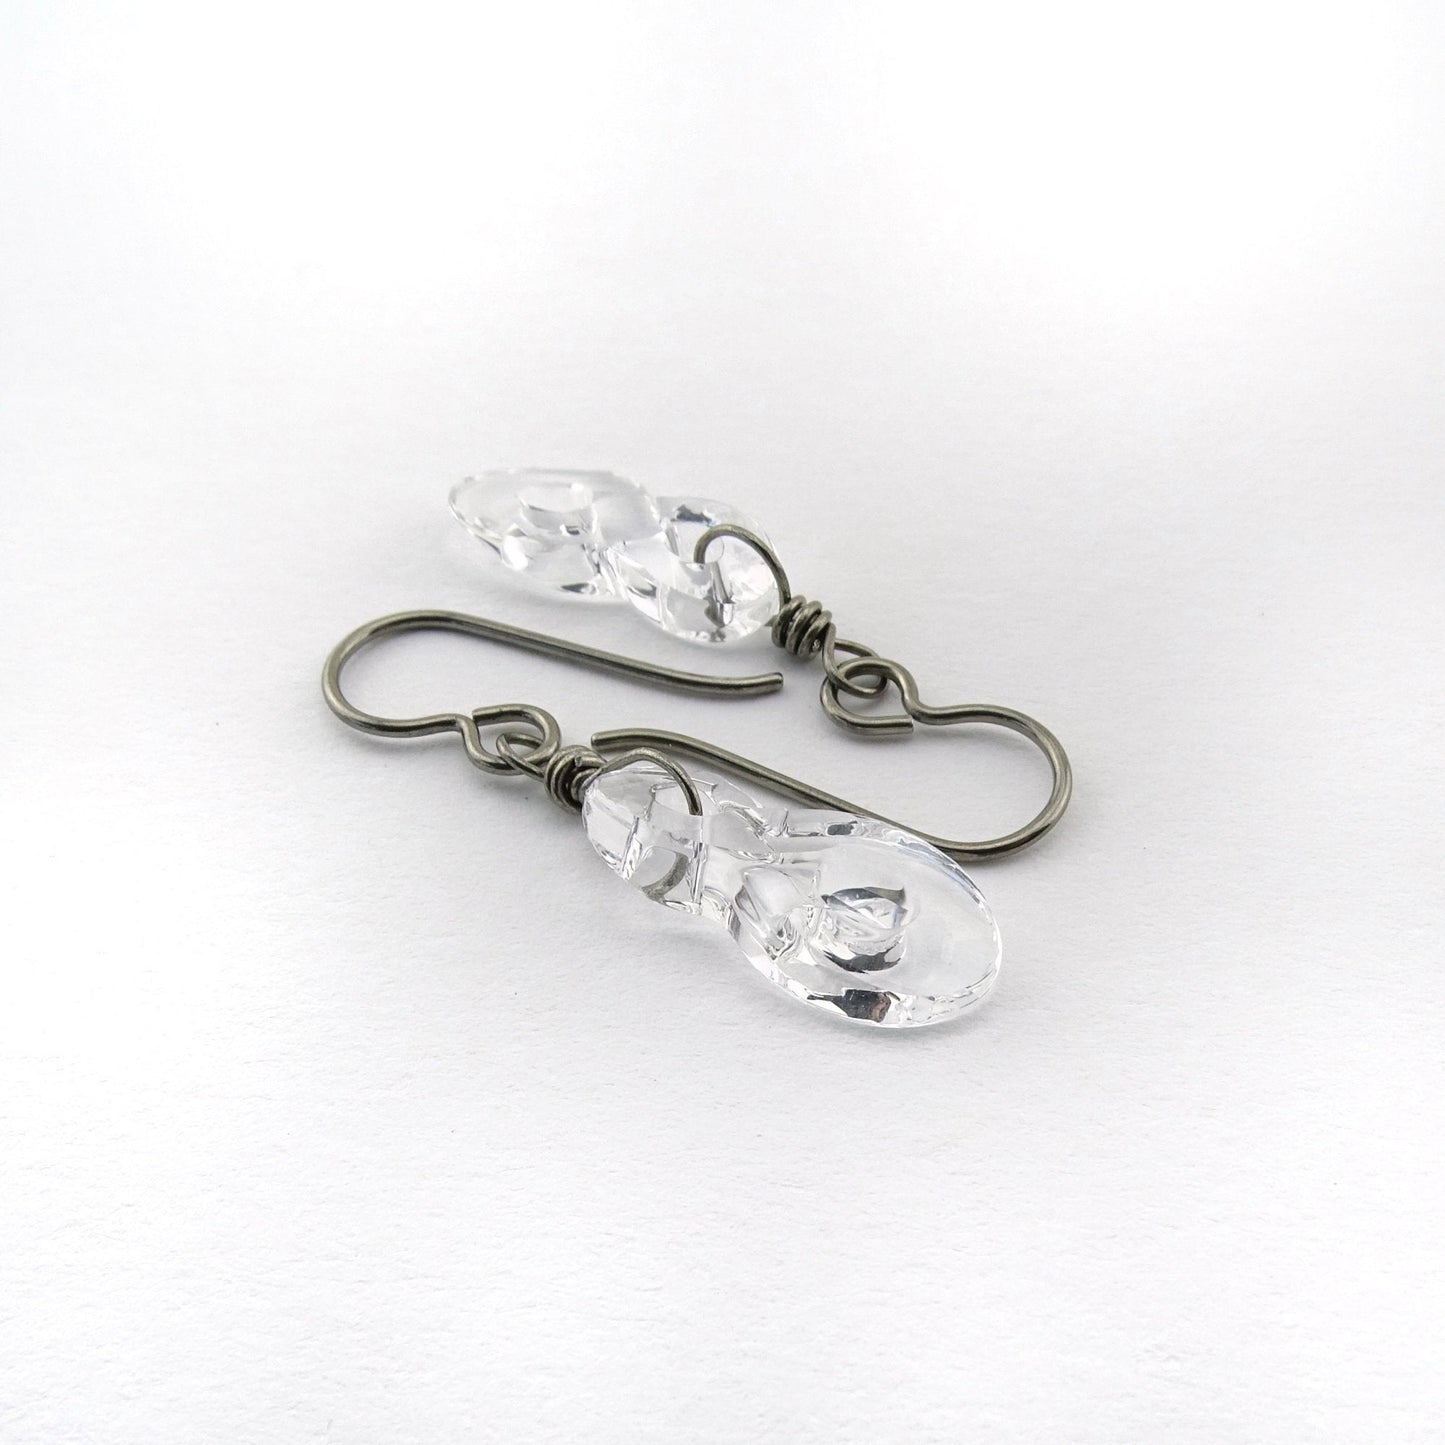 Clear Crystal Infinity Symbol Titanium Earrings, Swarovski Eternity Earrings for Sensitive Ears, Nickel Free Hypoallergenic Niobium Earrings